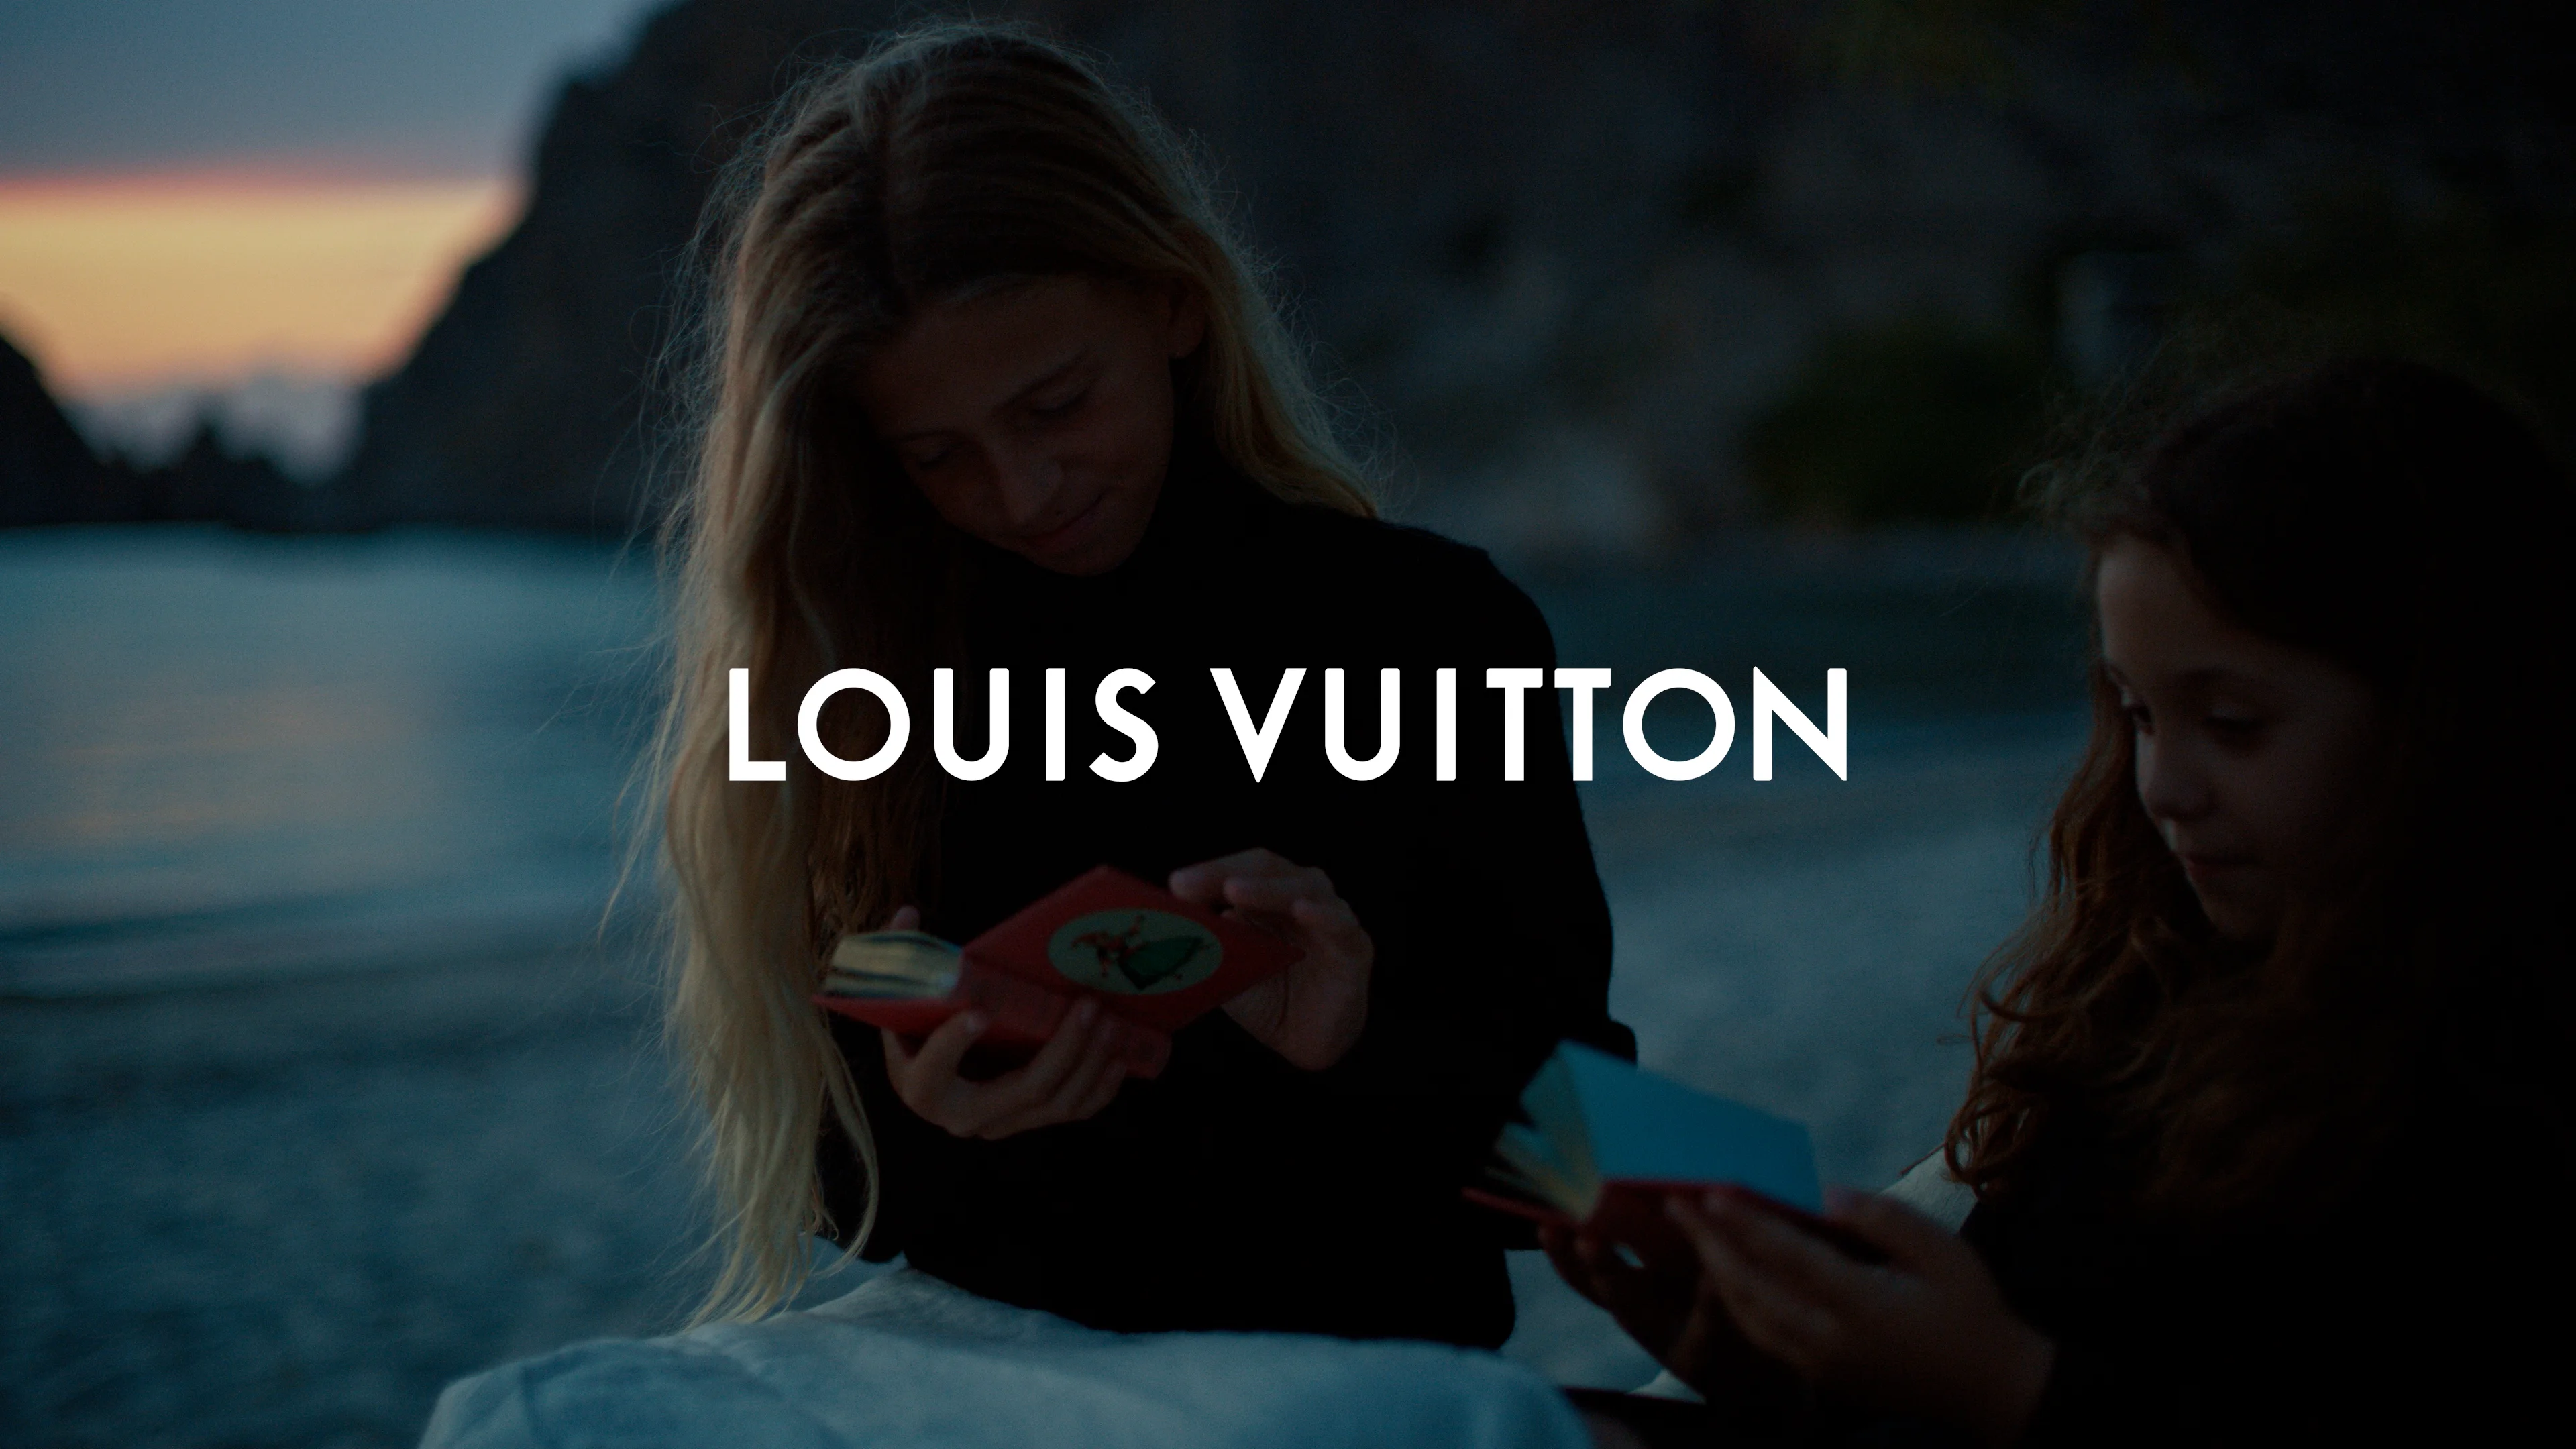 Louis Vuitton - Rhythm of Time on Vimeo